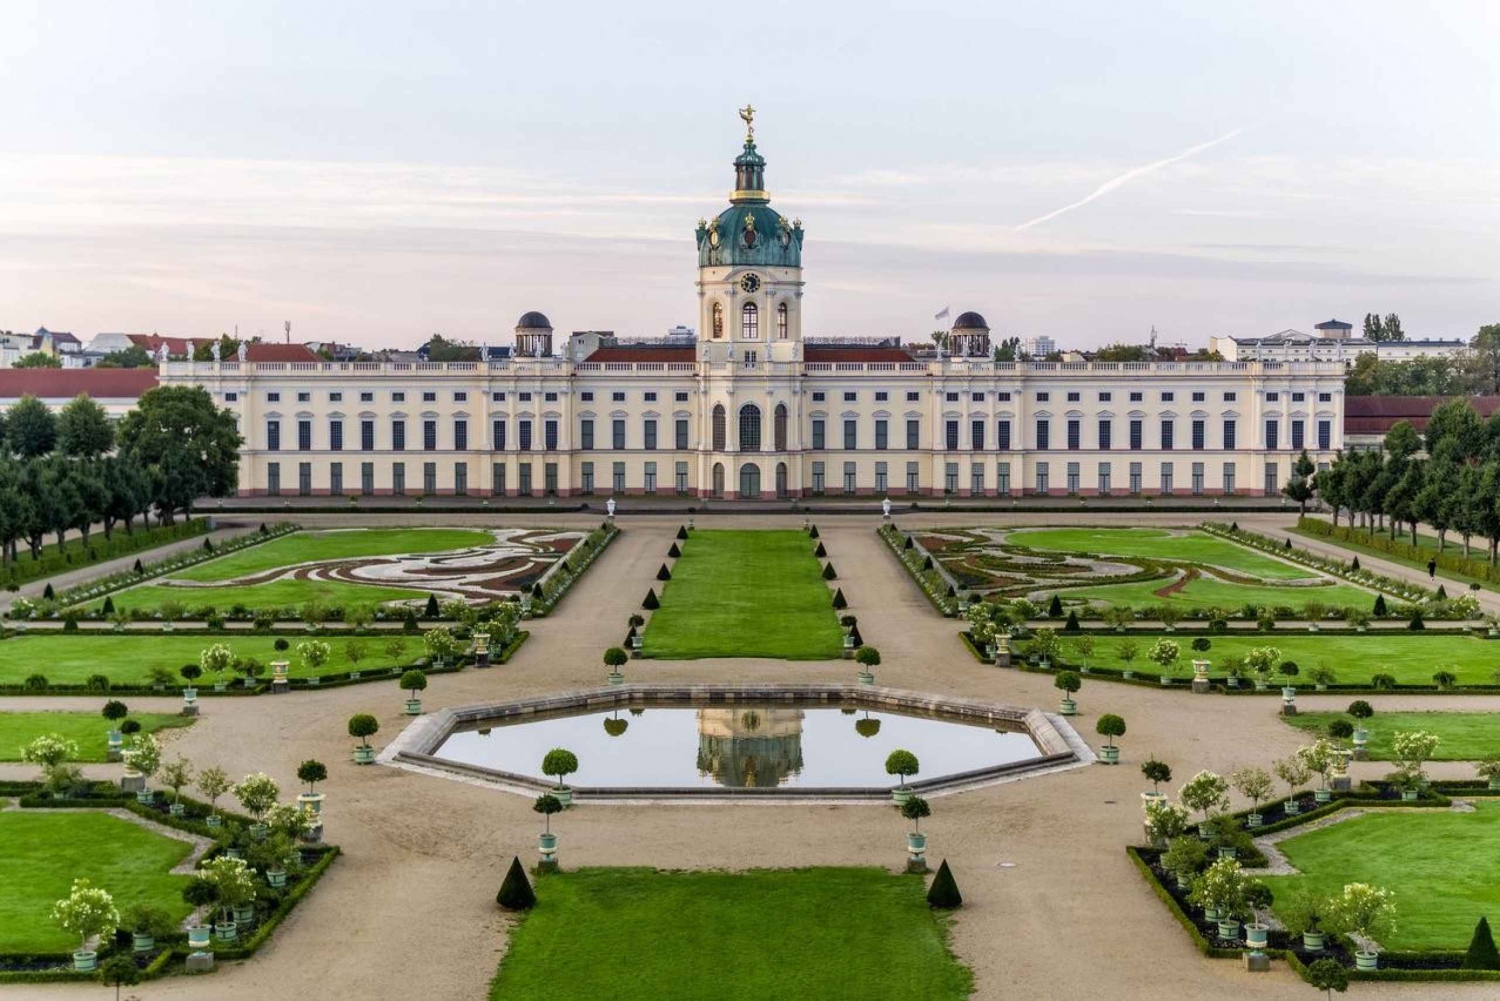 Berlin: Charlottenburg Palace Inträdesbiljett med ny paviljong